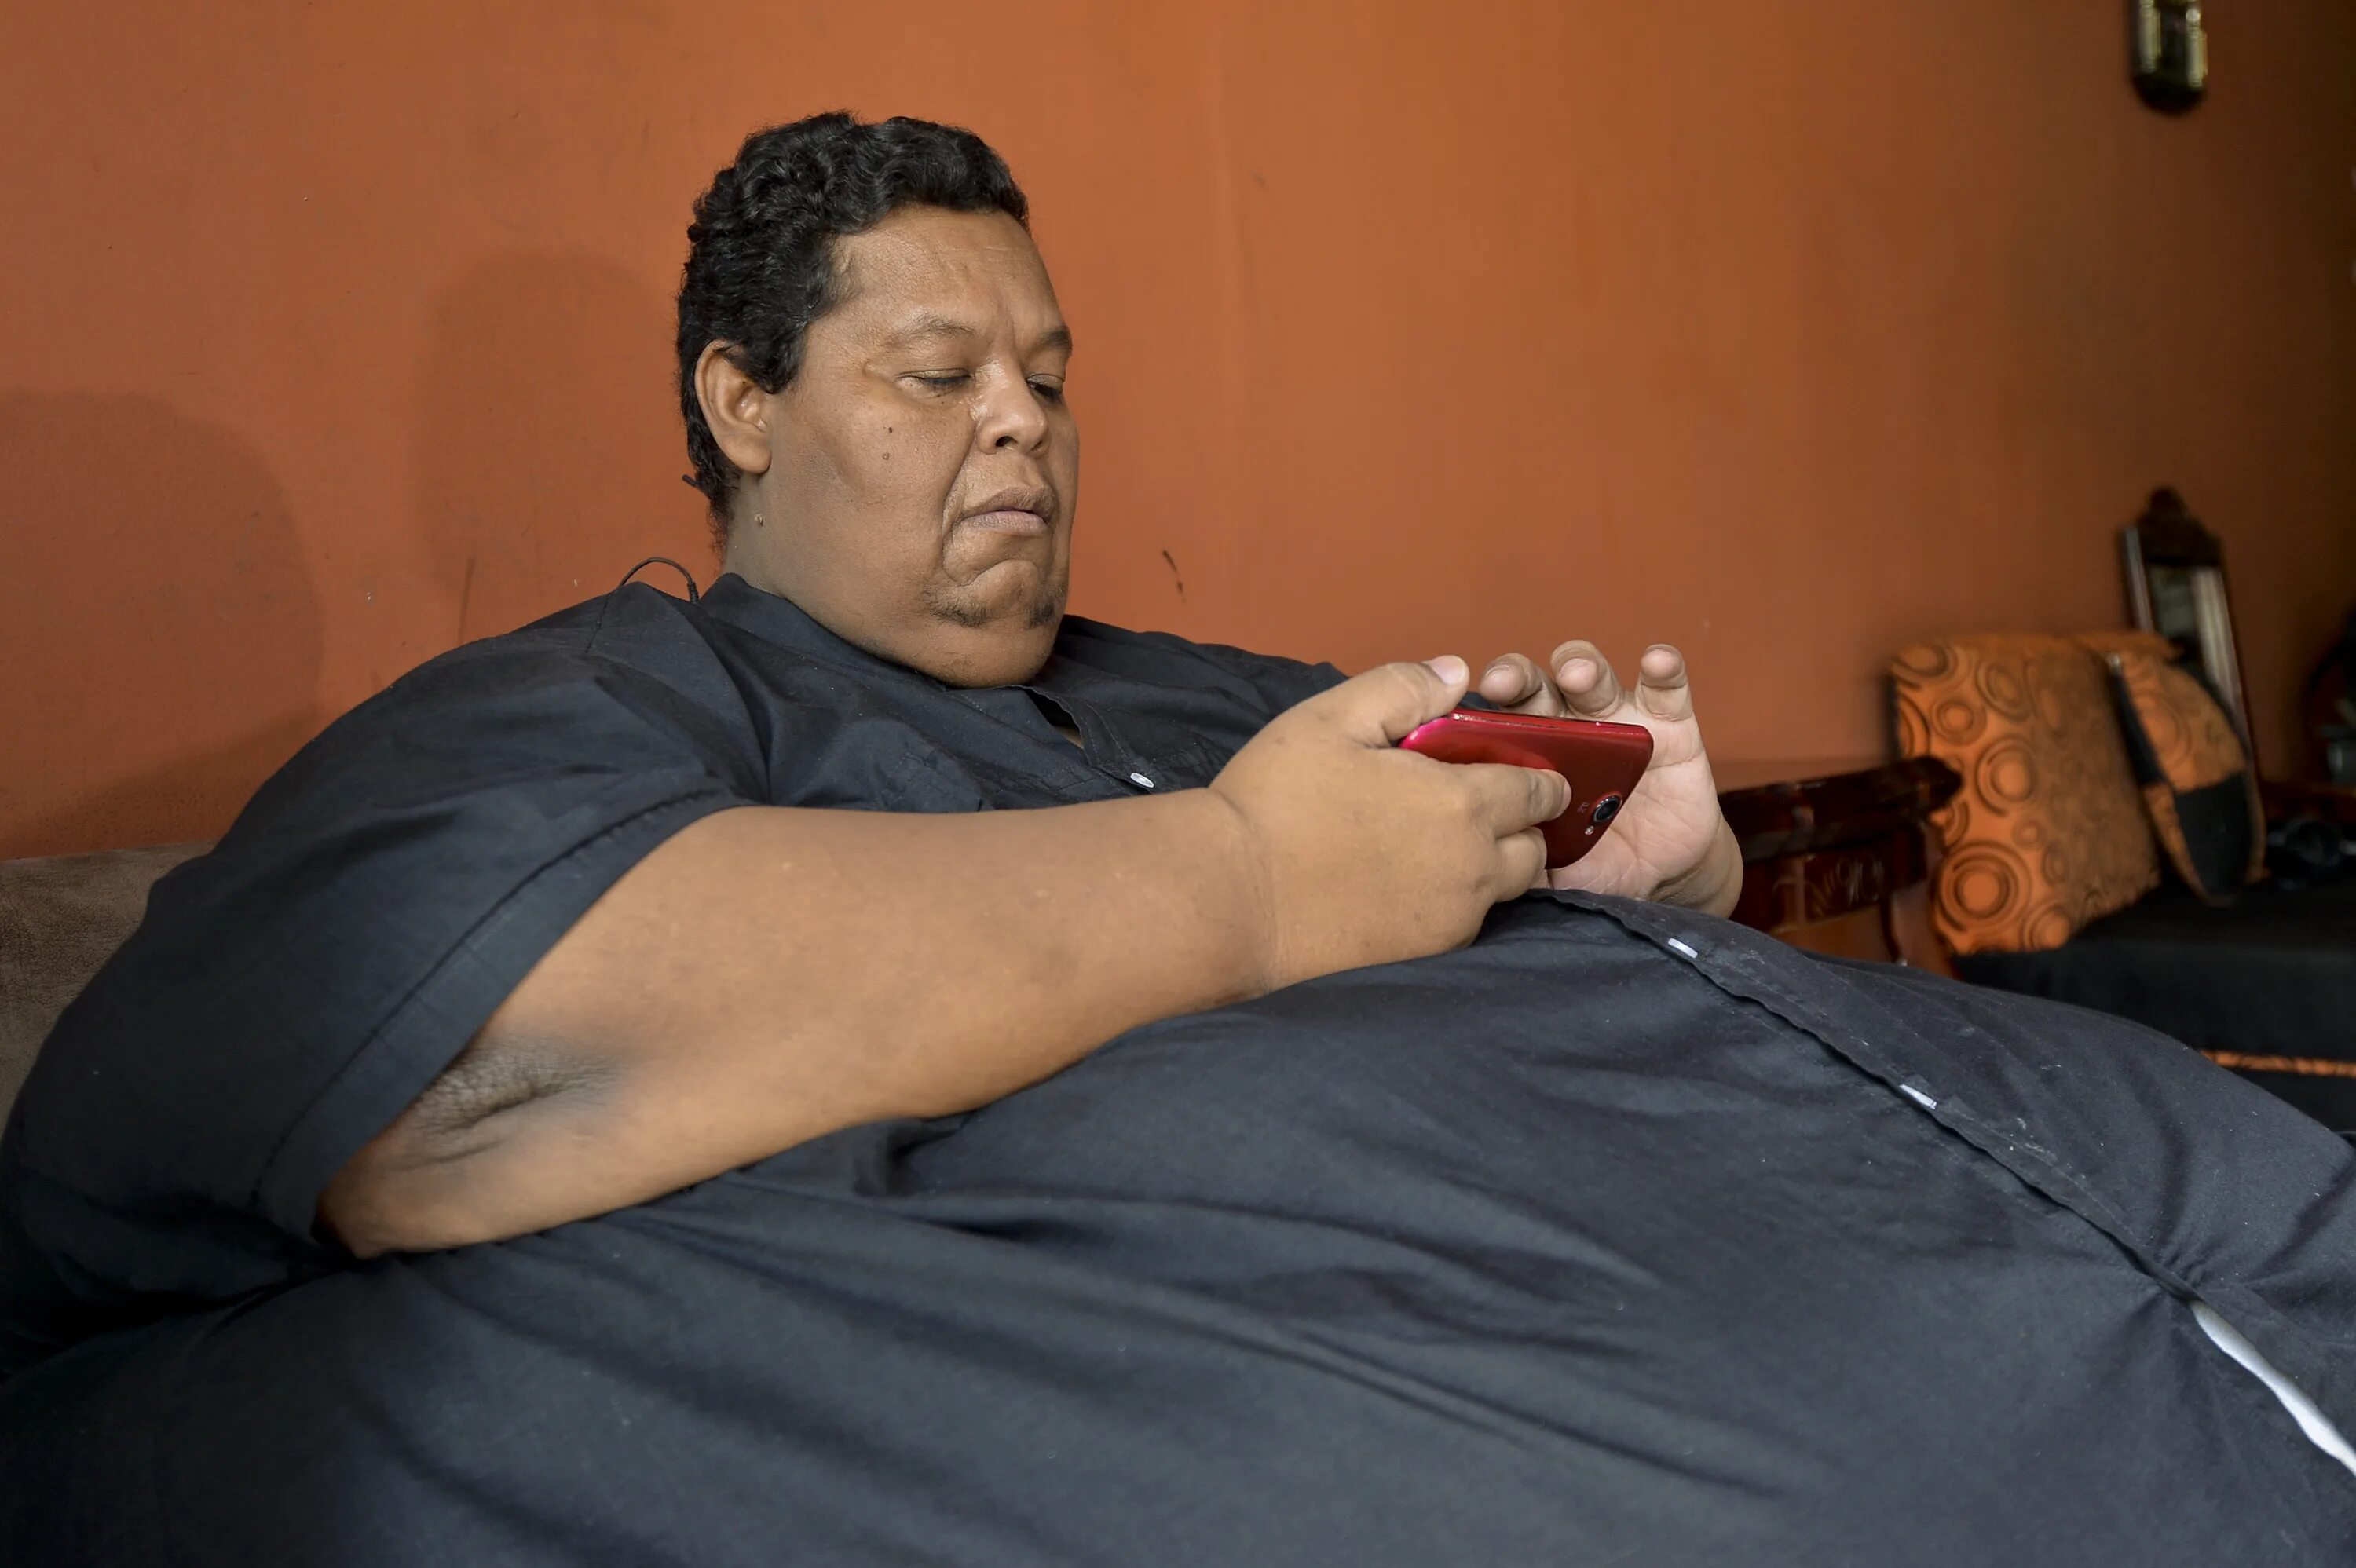 Очень жирный человек. Хуан Педро Франко 600 кг. Хуан Педро Франко Салас 2018.